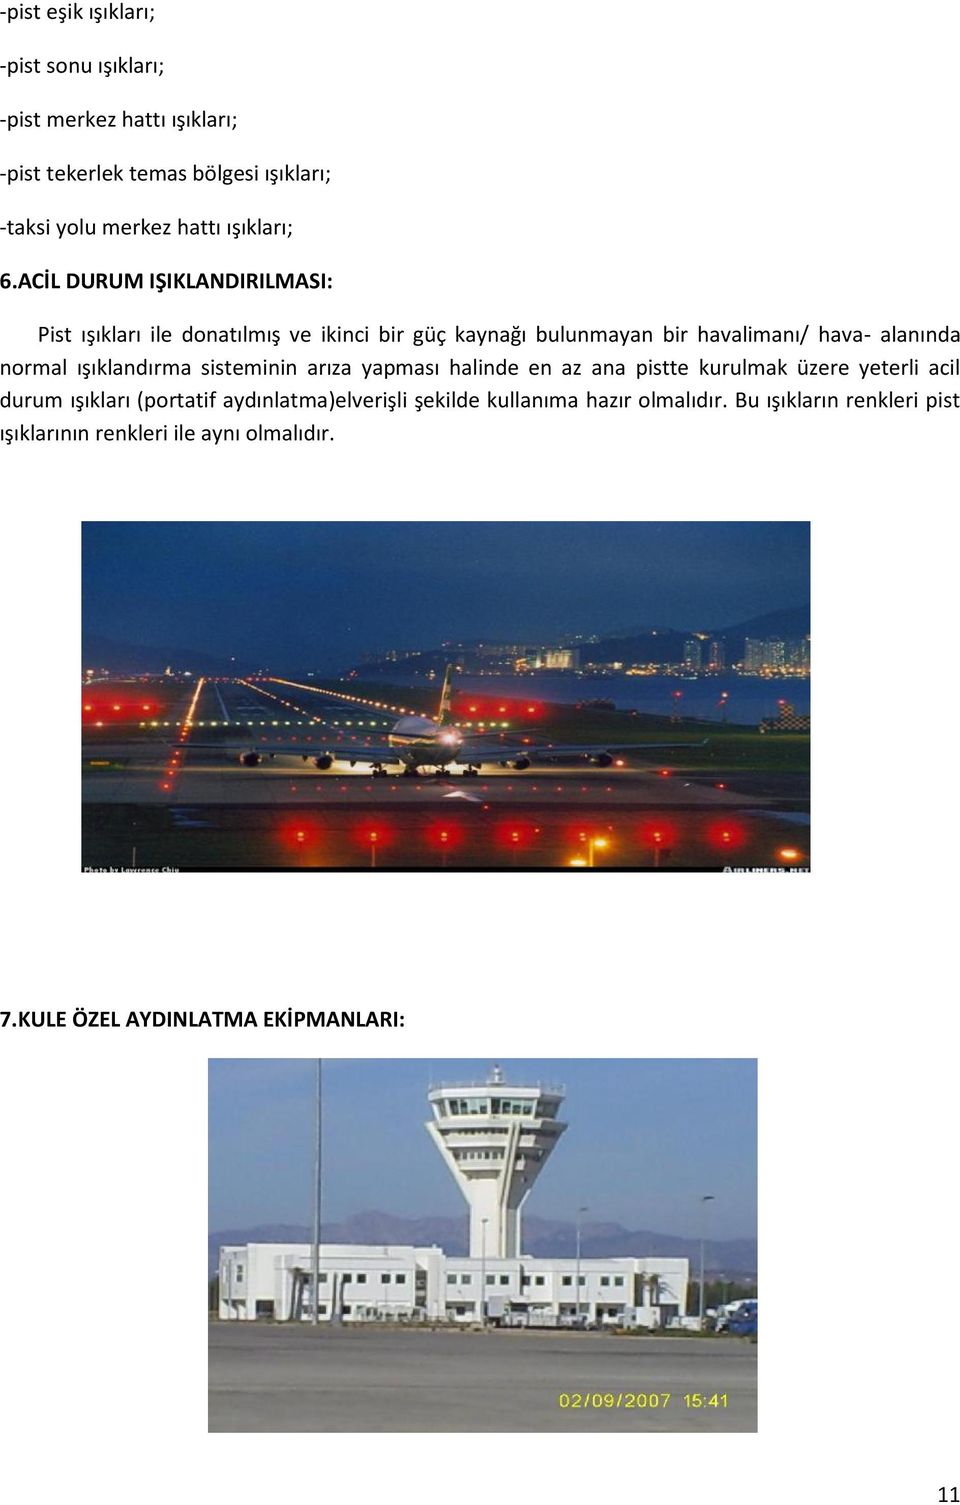 ACİL DURUM IŞIKLANDIRILMASI: Pist ışıkları ile donatılmış ve ikinci bir güç kaynağı bulunmayan bir havalimanı/ hava- alanında normal